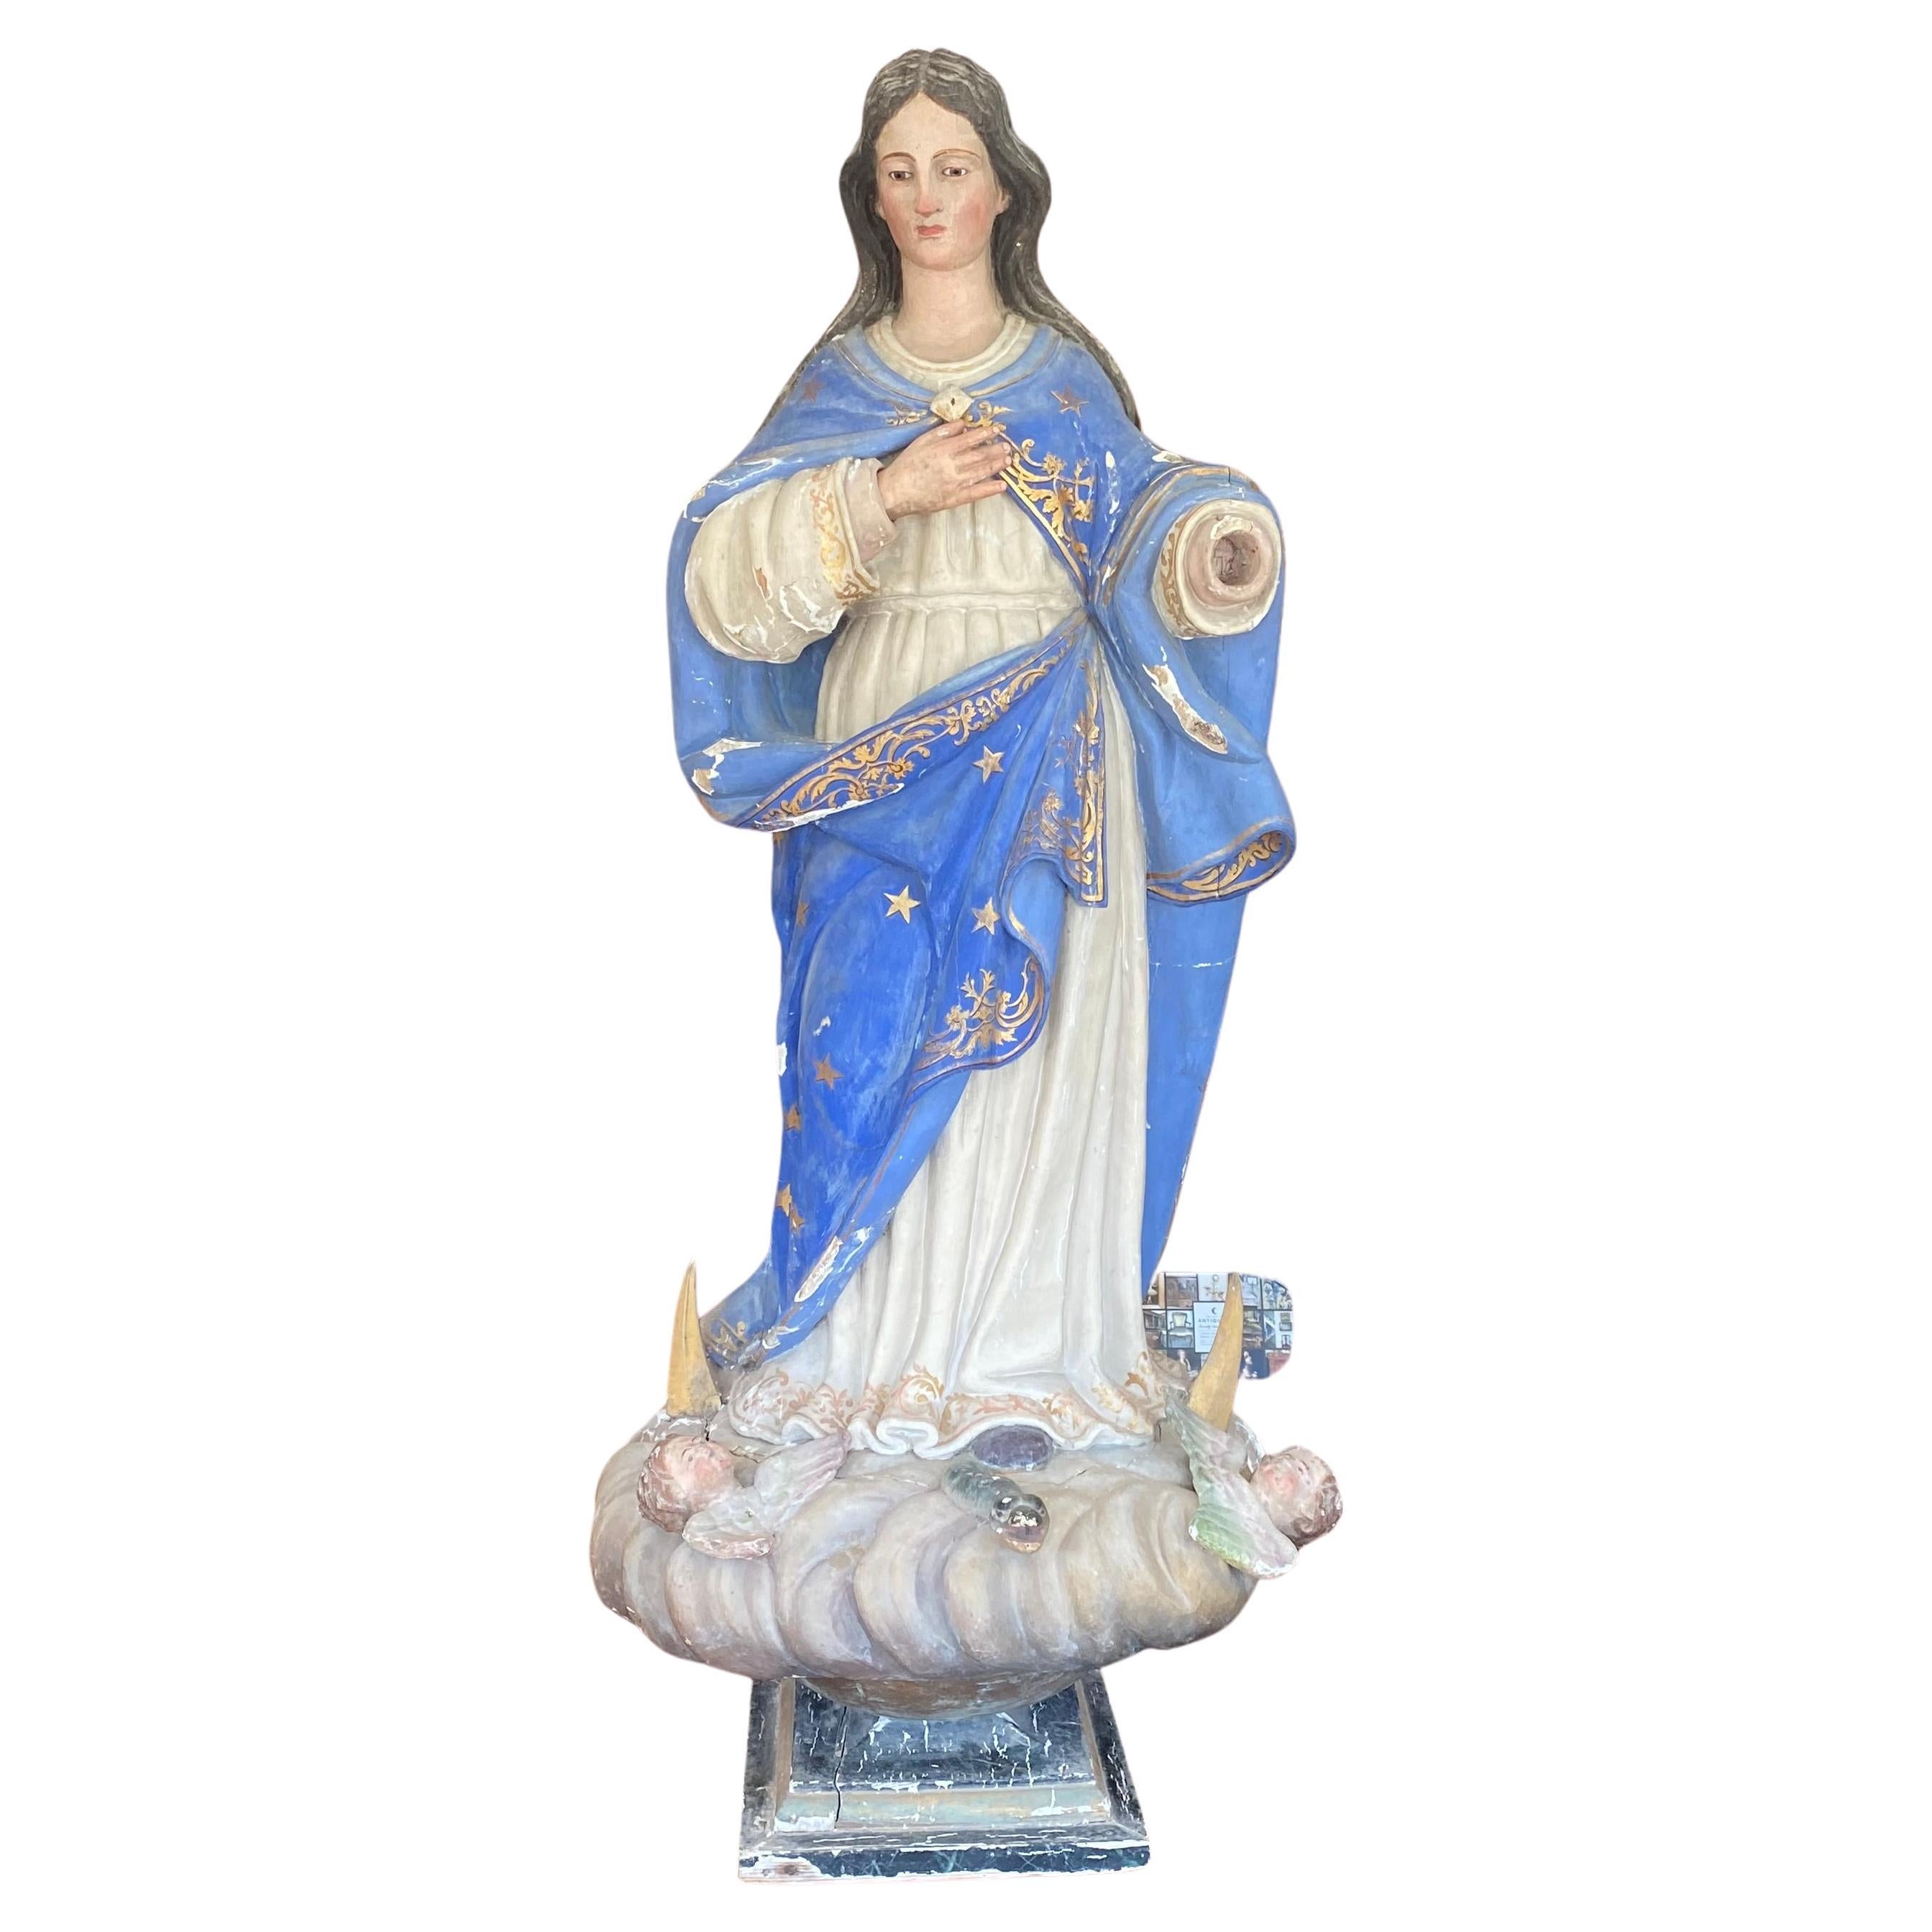 Impressive Antique Lifesize Immaculata Religious Sculpture